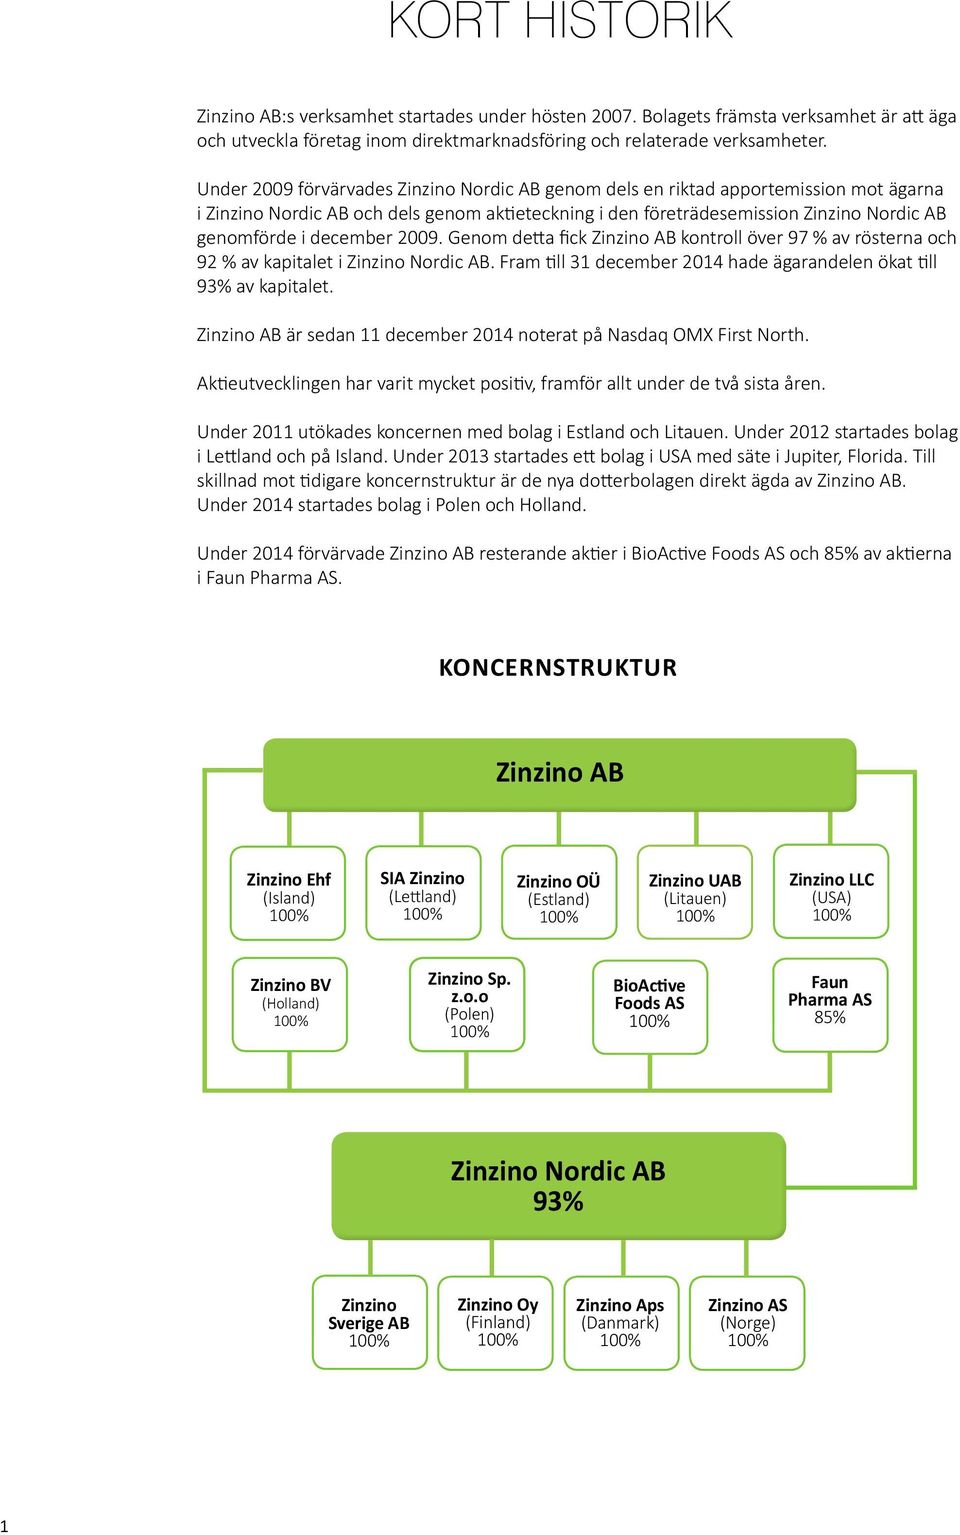 december 2009. Genom detta fick Zinzino AB kontroll över 97 % av rösterna och 92 % av kapitalet i Zinzino Nordic AB. Fram till 31 december 2014 hade ägarandelen ökat till 93% av kapitalet.